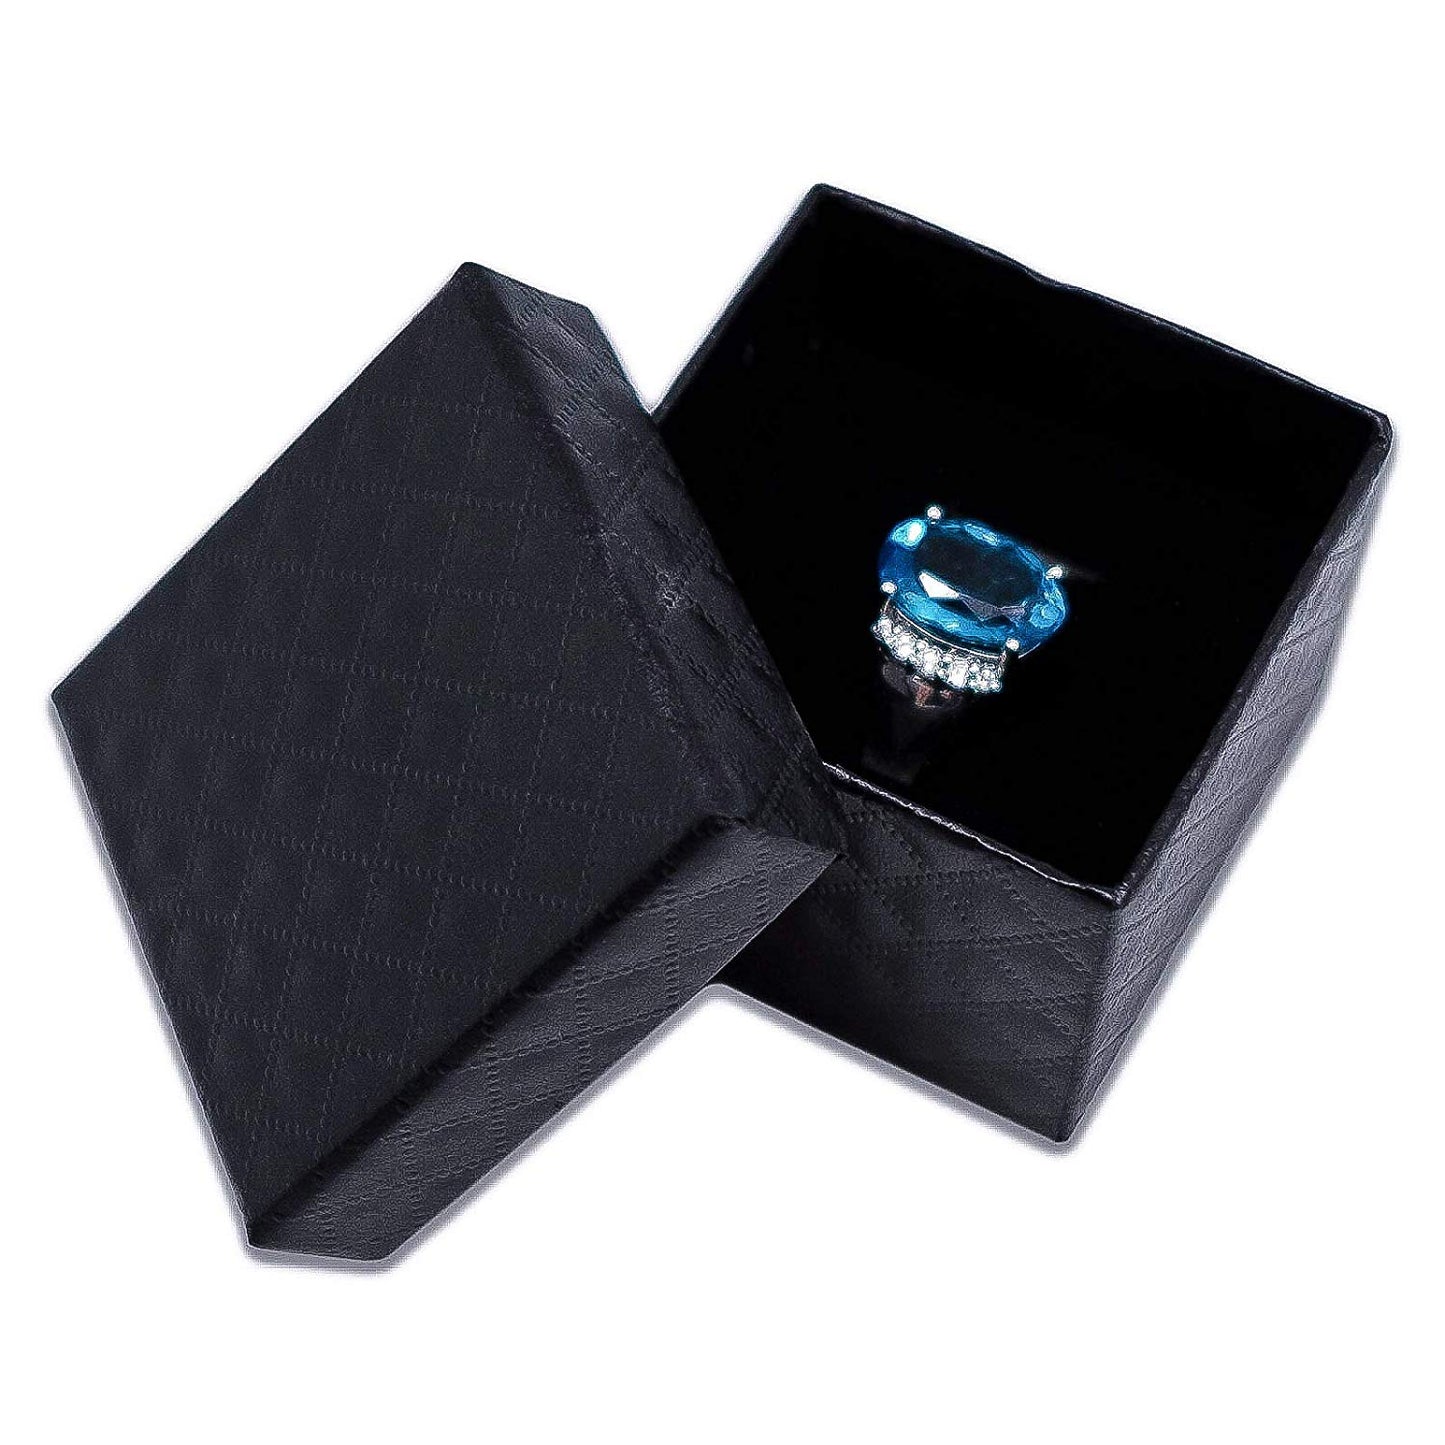 1 3/4" x 1 3/4" Black Diamond Pattern Cardboard Jewelry Box